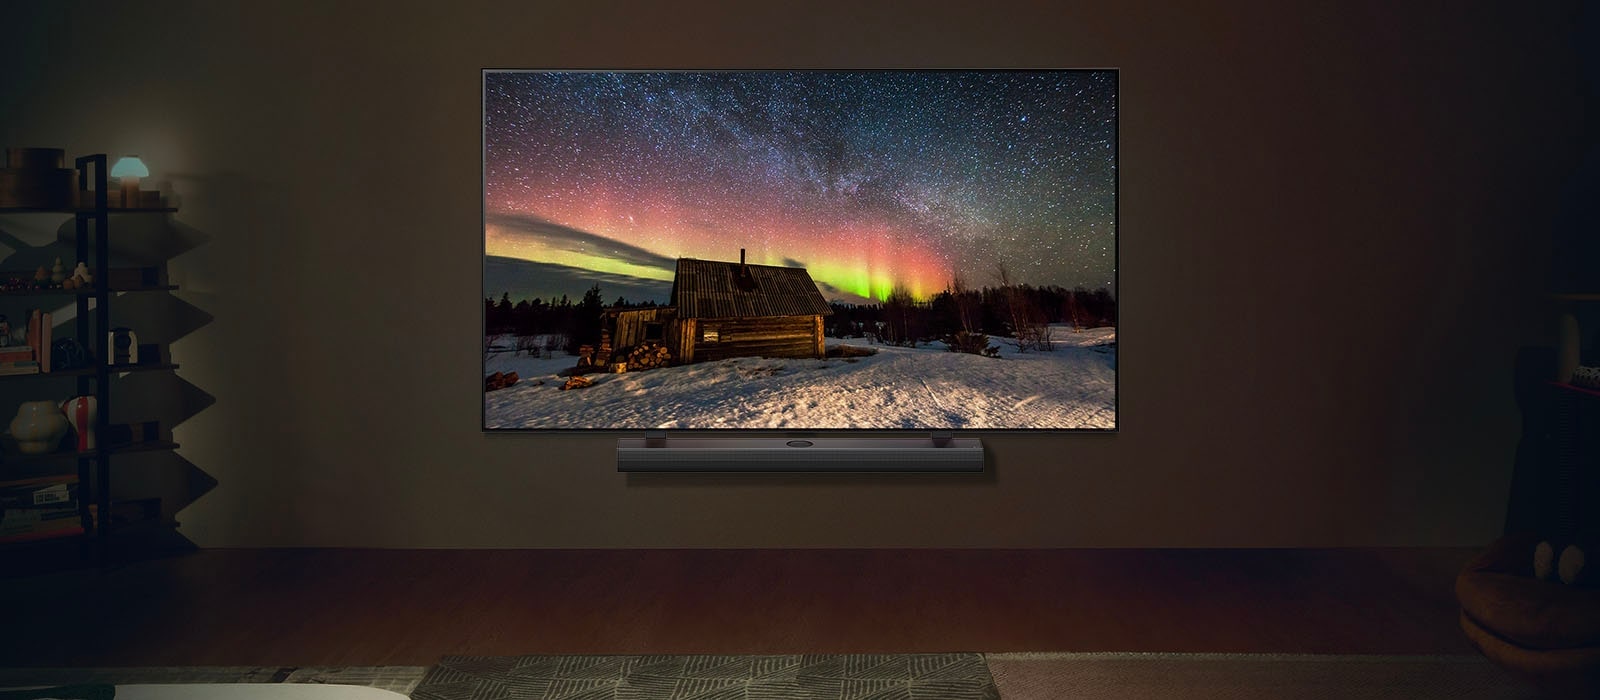 LG TV та LG Soundbar у сучасному житловому приміщенні вночі. Екранне зображення полярного сяйва відображається з ідеальними рівнями яскравості.